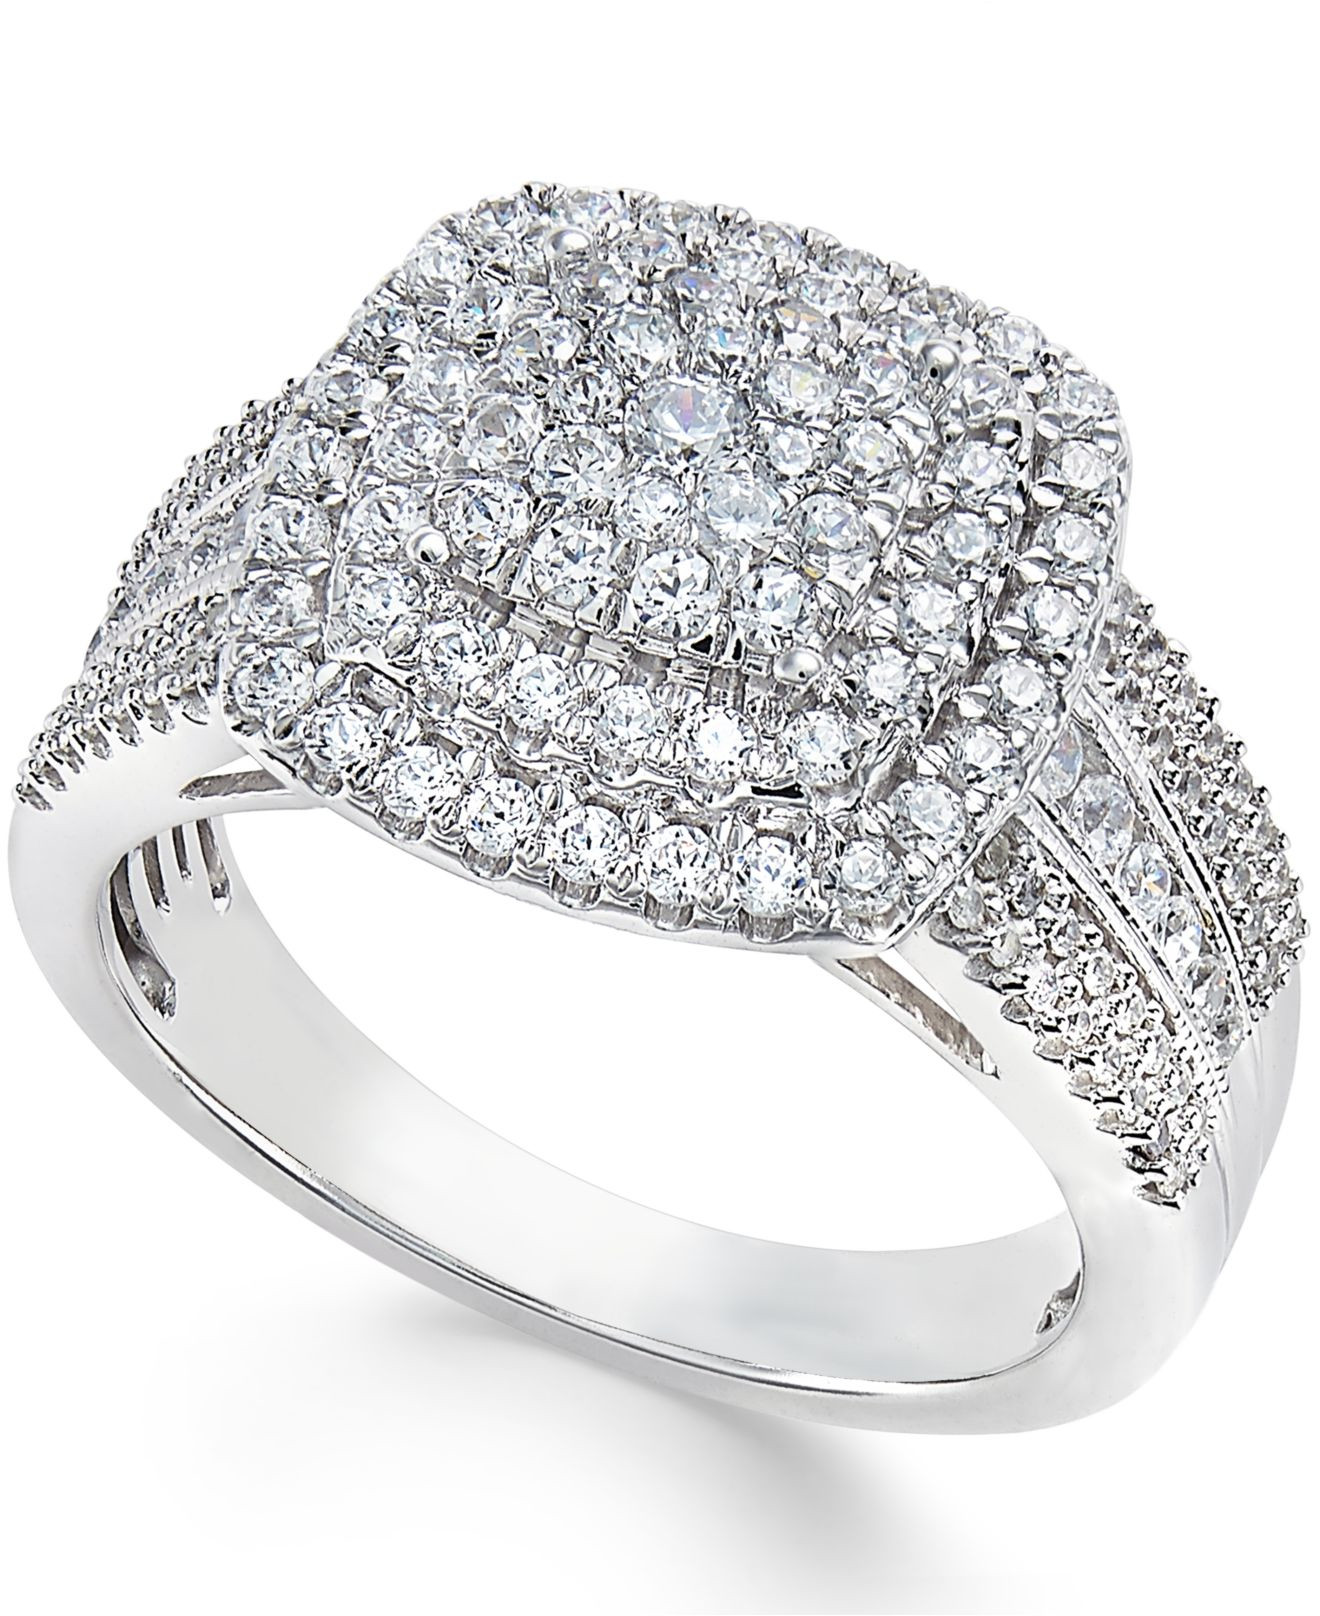 Macys Diamond Rings
 Lyst Macy S Diamond Cluster Ring 1 Ct T w In 10k